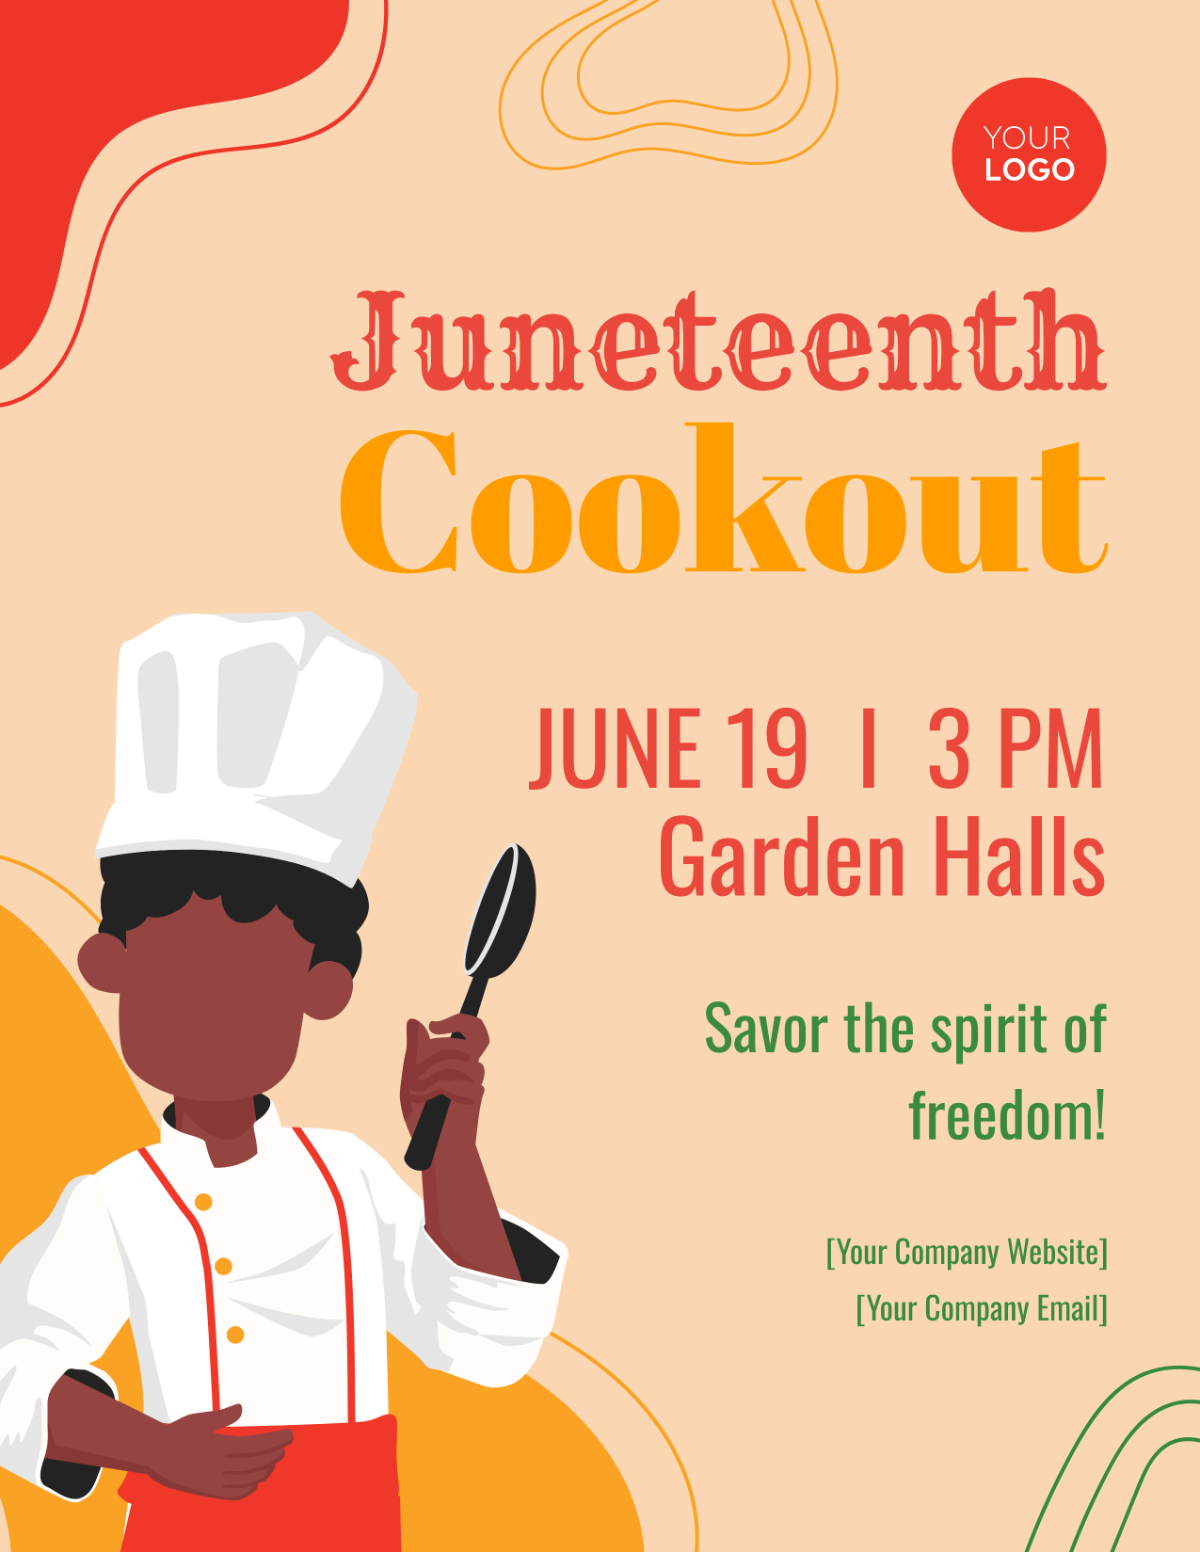 Juneteenth Cookout Flyer Template